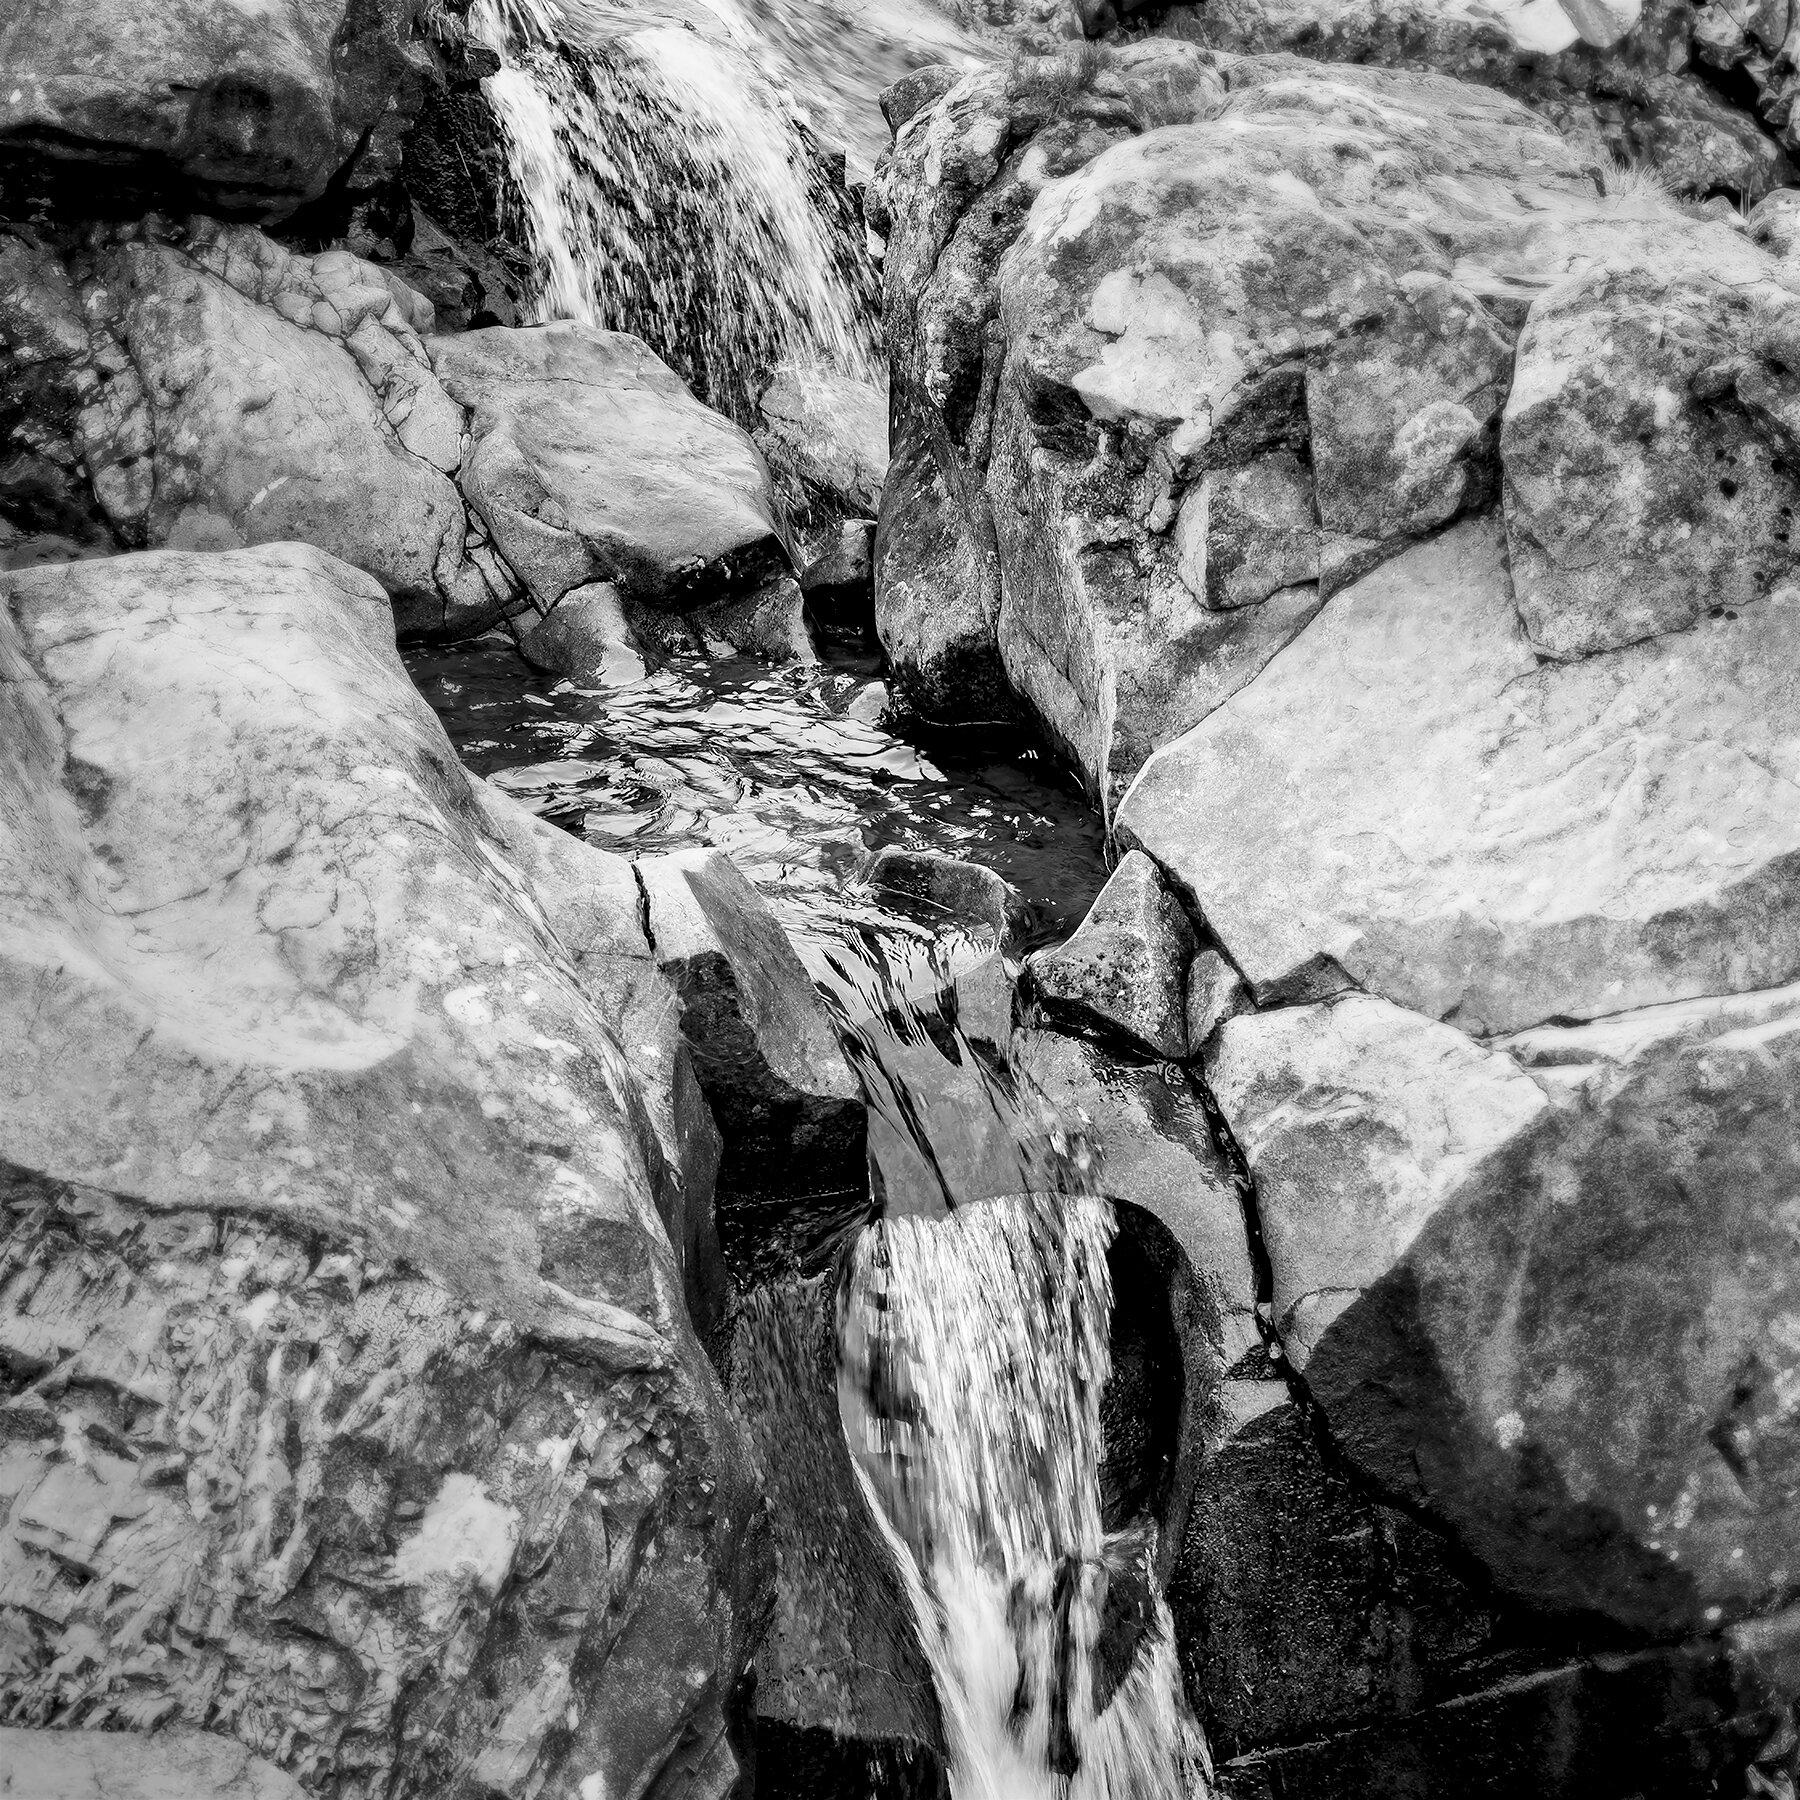 COVE-Skye Waterfall-6x6 copy (1).jpg